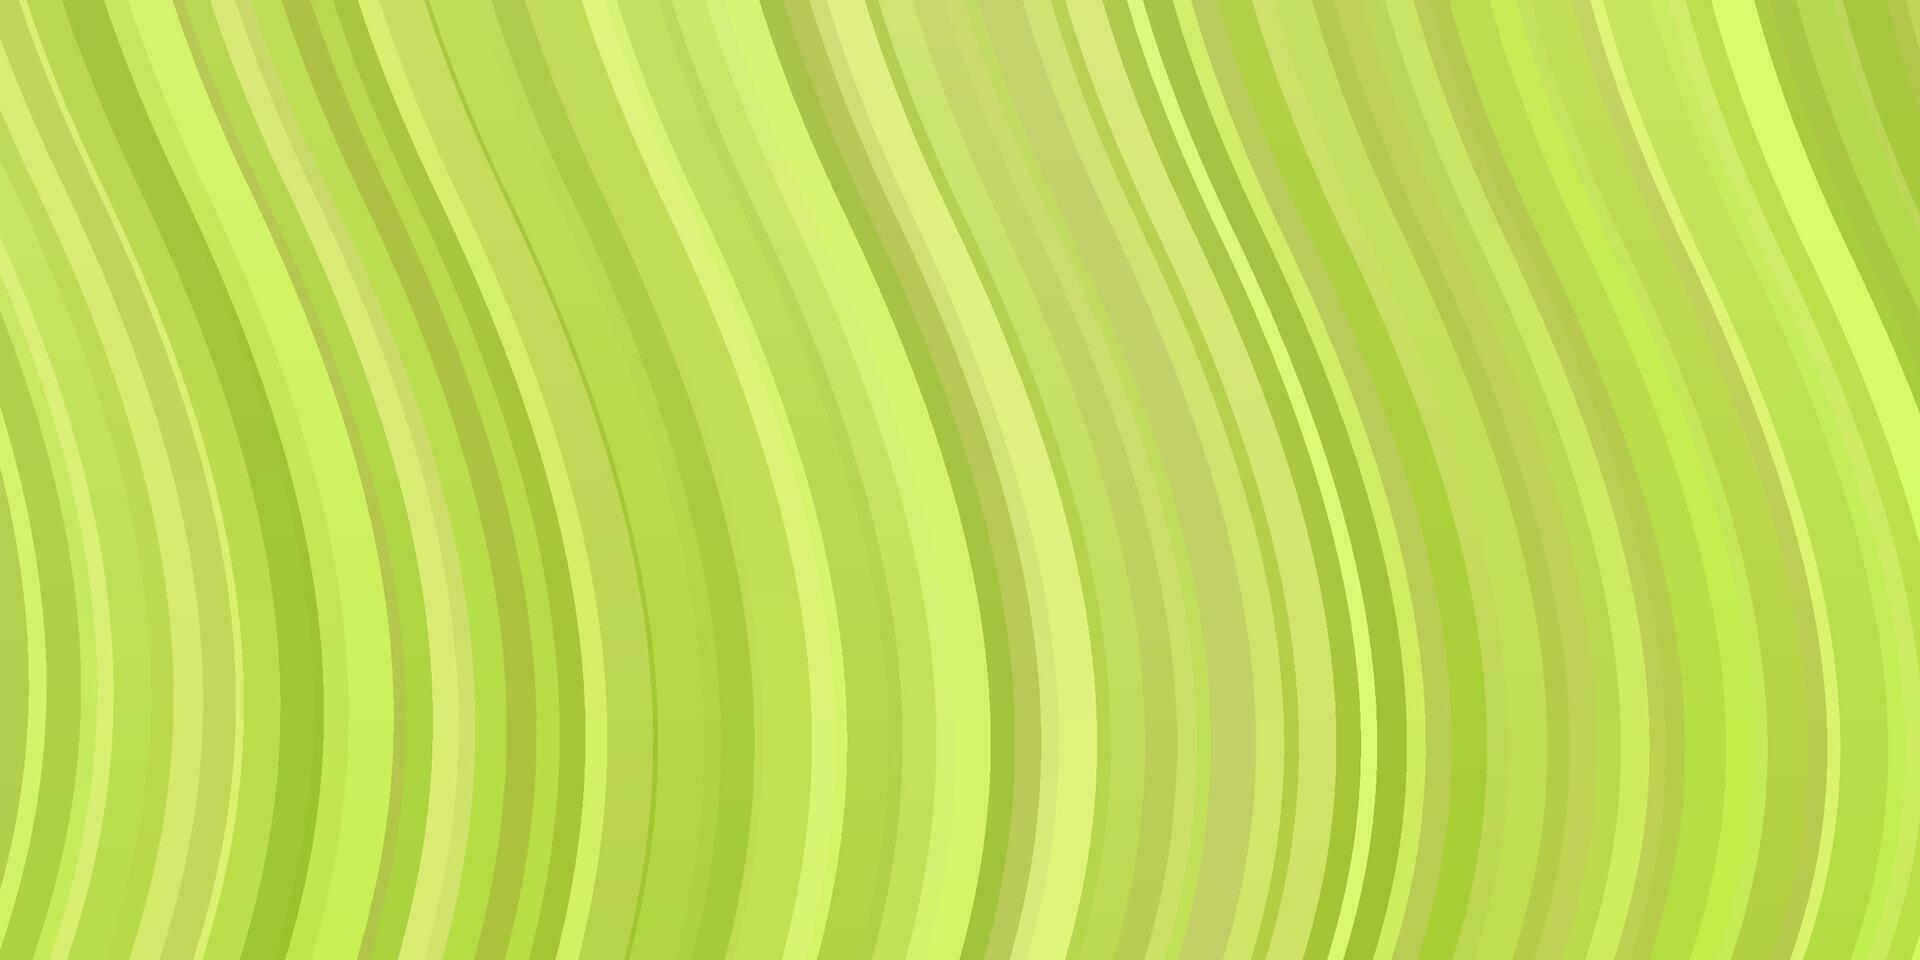 ljusgrön, gul vektorbakgrund med böjda linjer. vektor